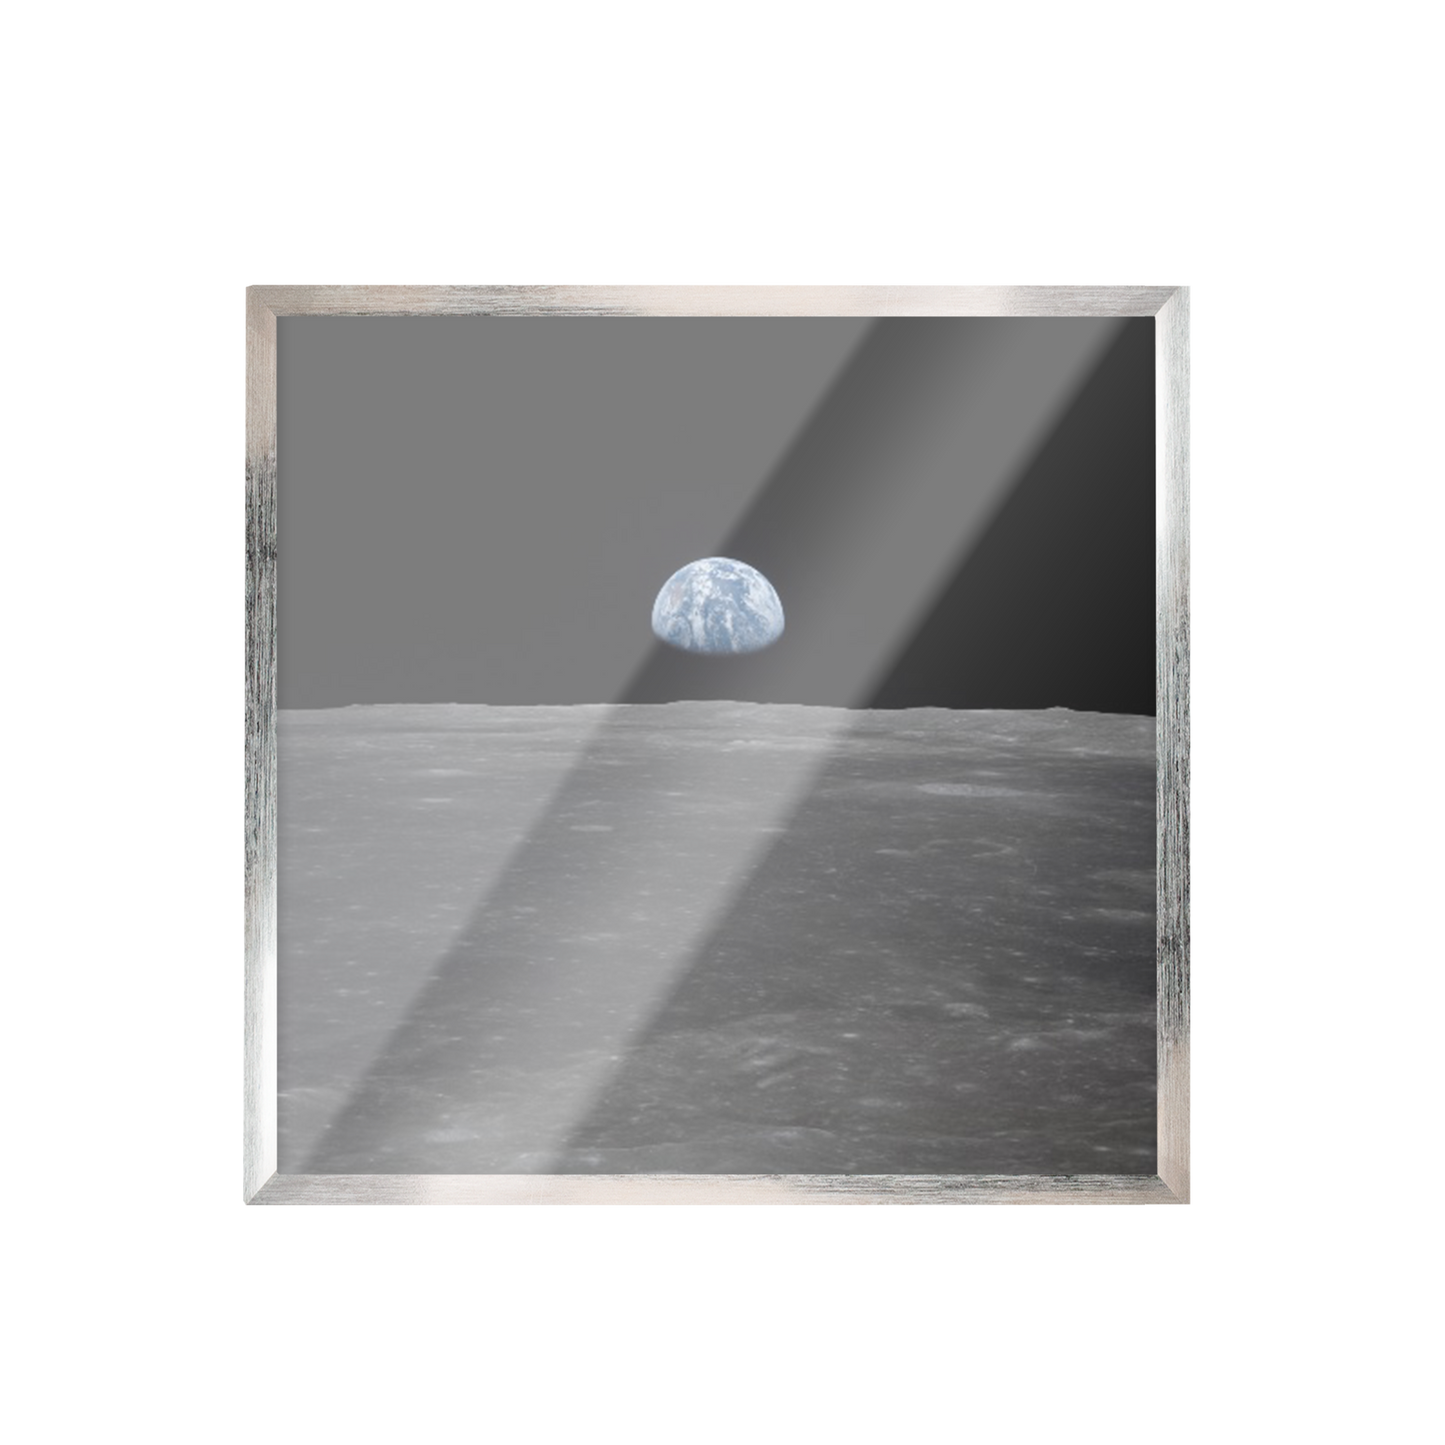 Espacio tierra desde la luna 145